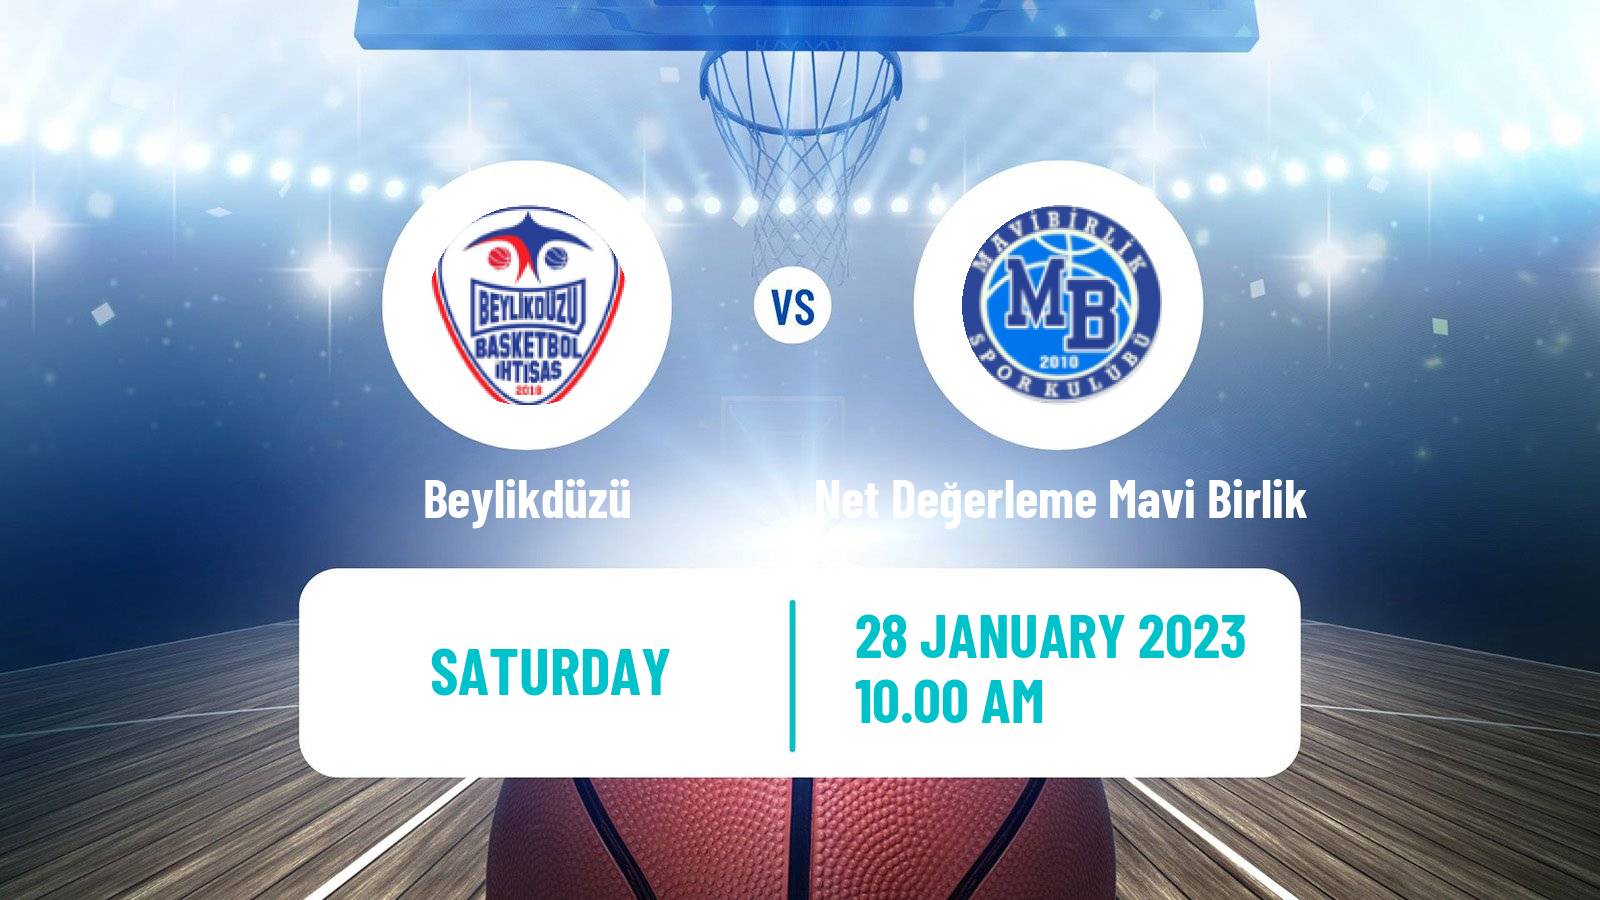 Basketball Turkish TB2L Beylikdüzü - Net Değerleme Mavi Birlik